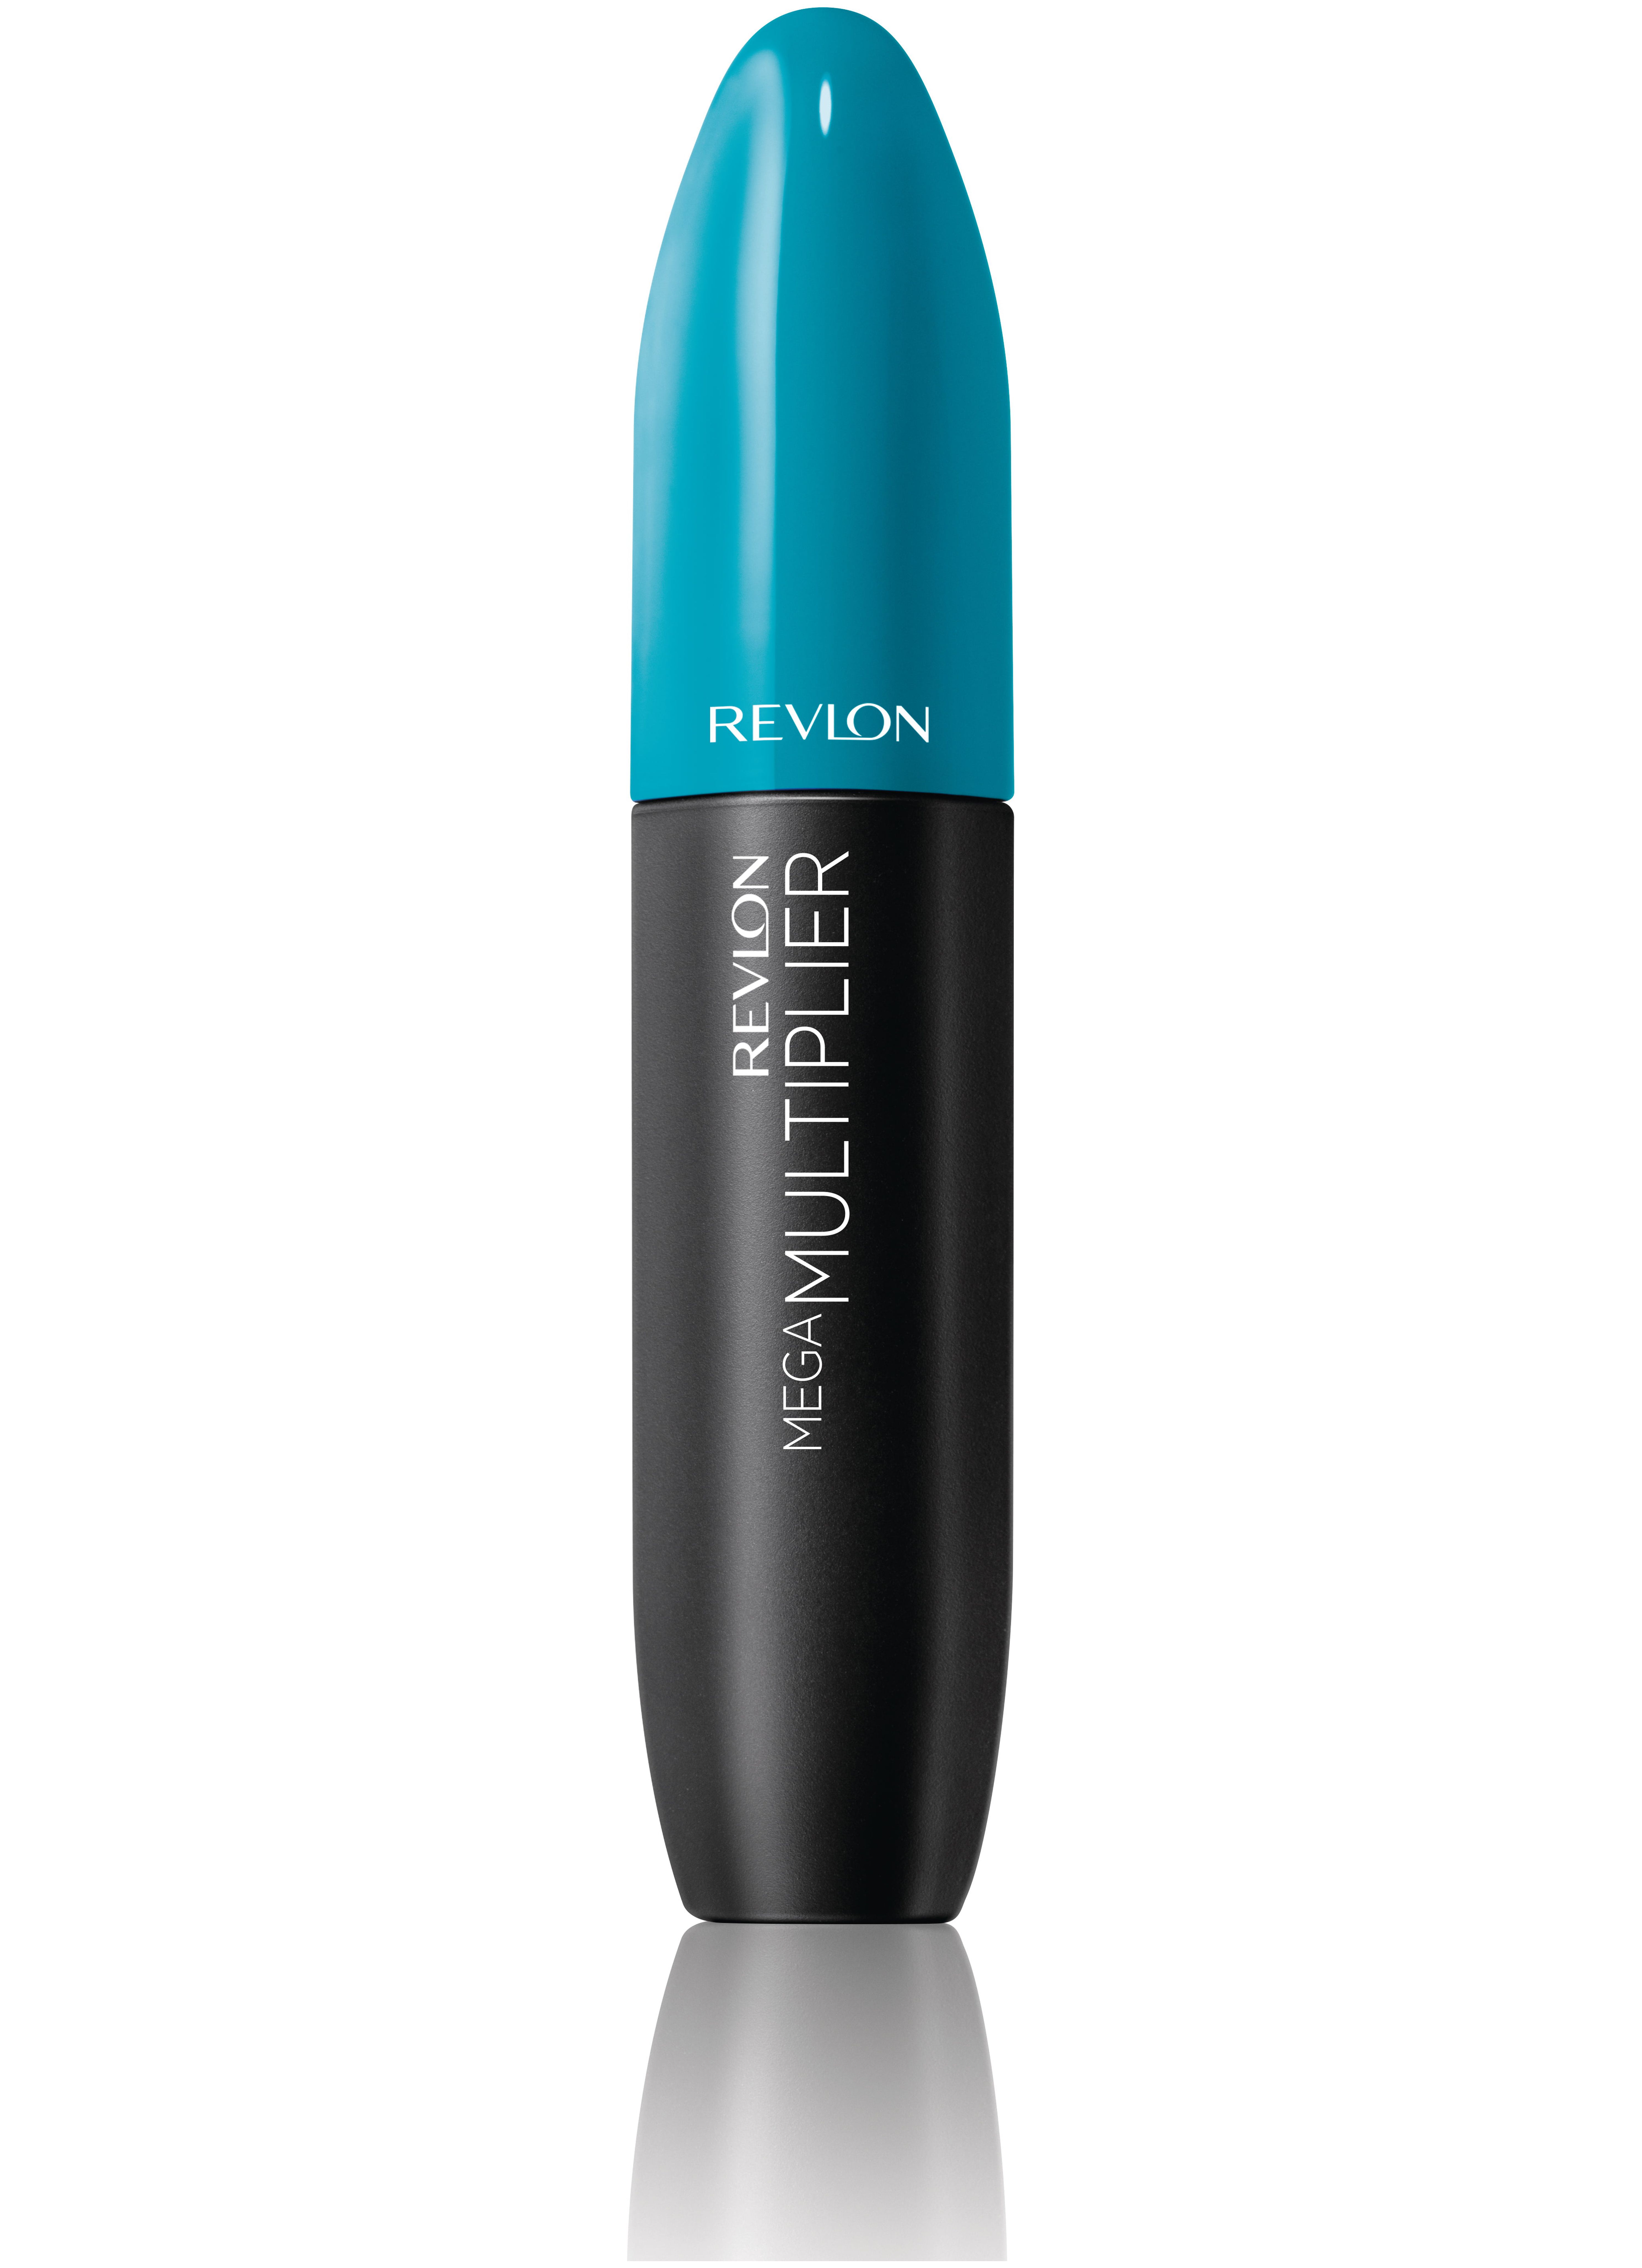 Revlon Mega Multiplier Mascara, Smudgeproof Eye Makeup, 804 Plum Brown, 0.28 fl oz - image 2 of 3